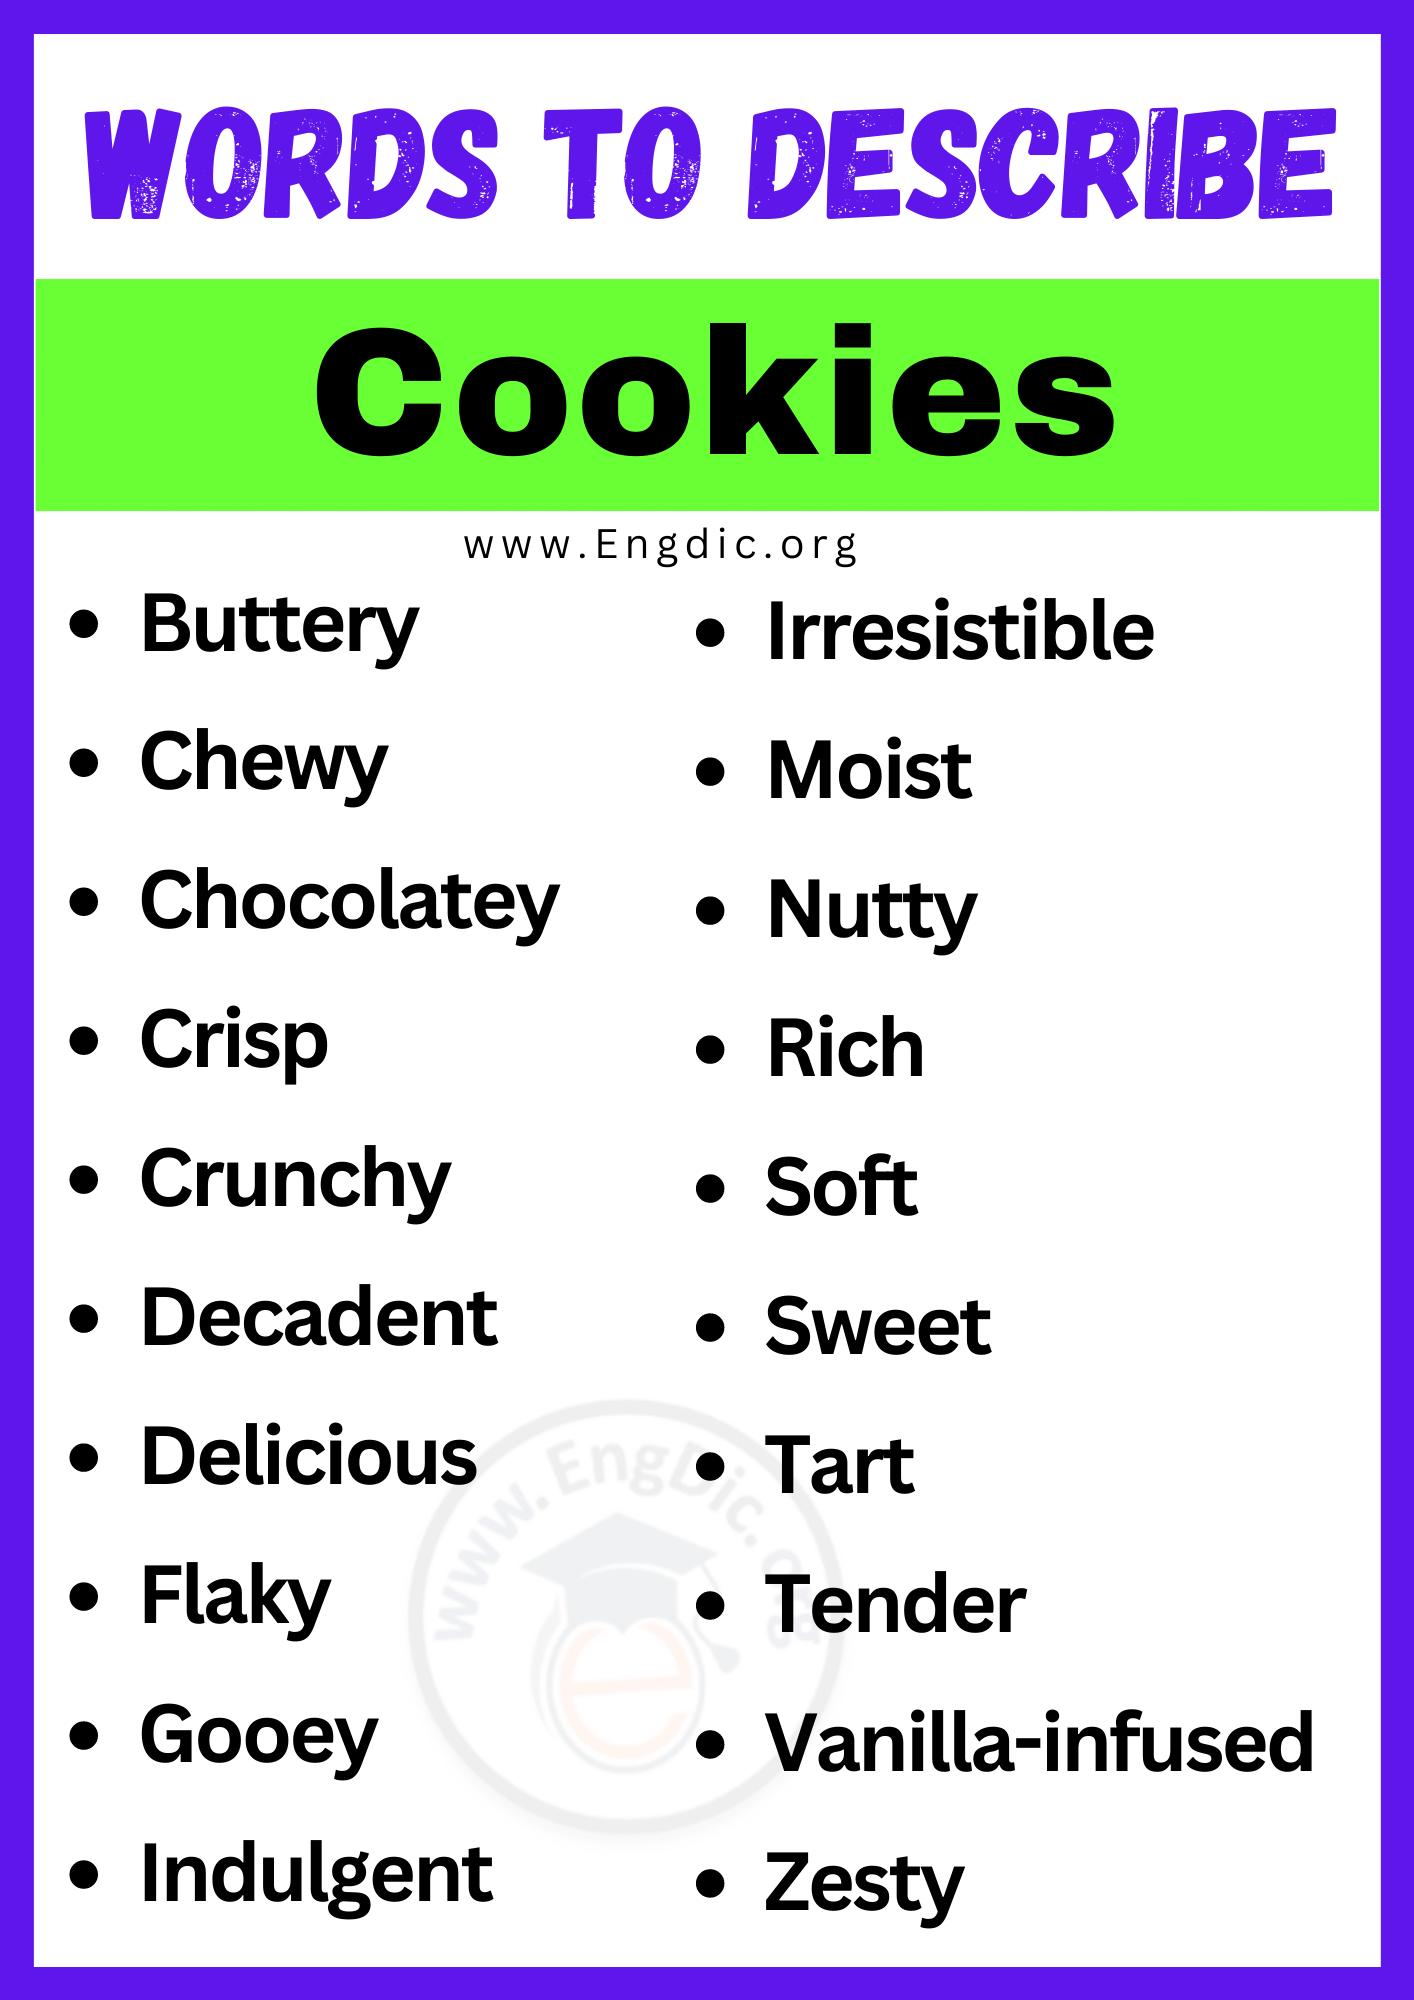 Words to Describe Cookies